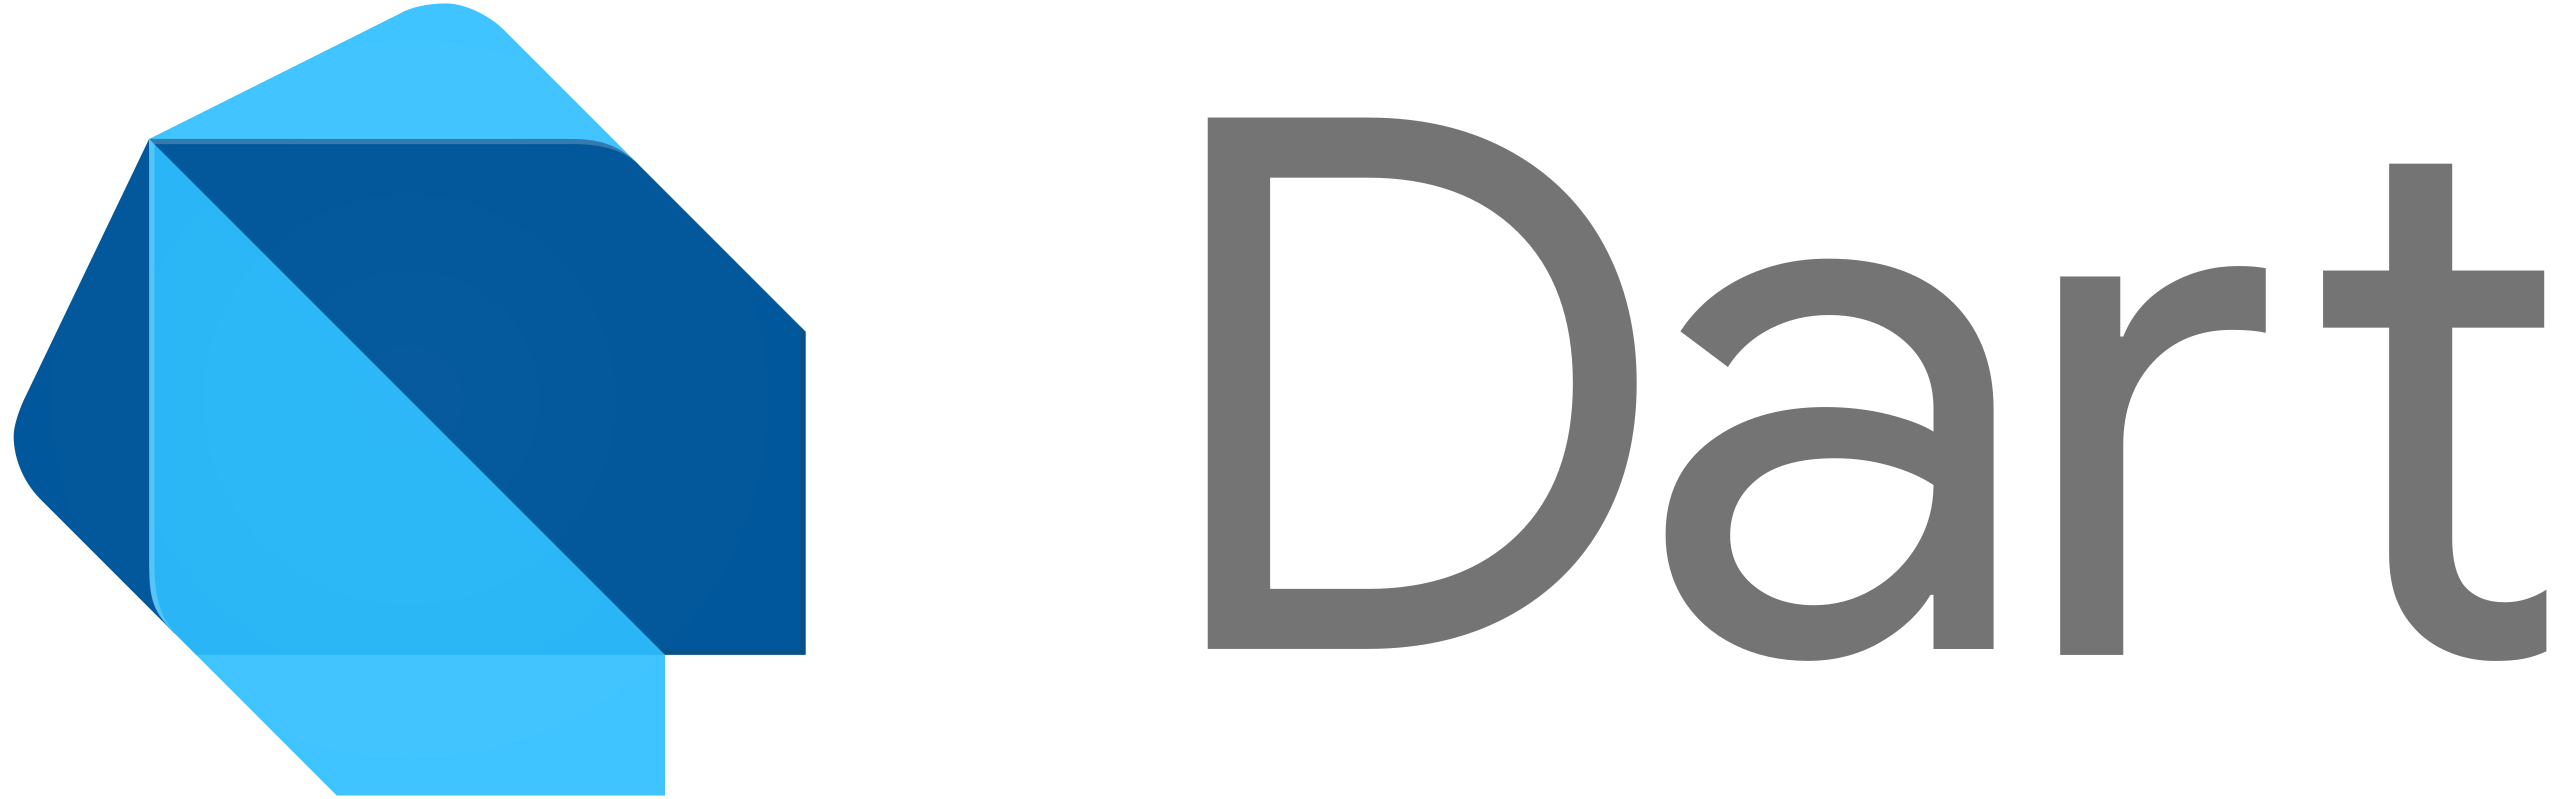 Dart_programming_language_logo